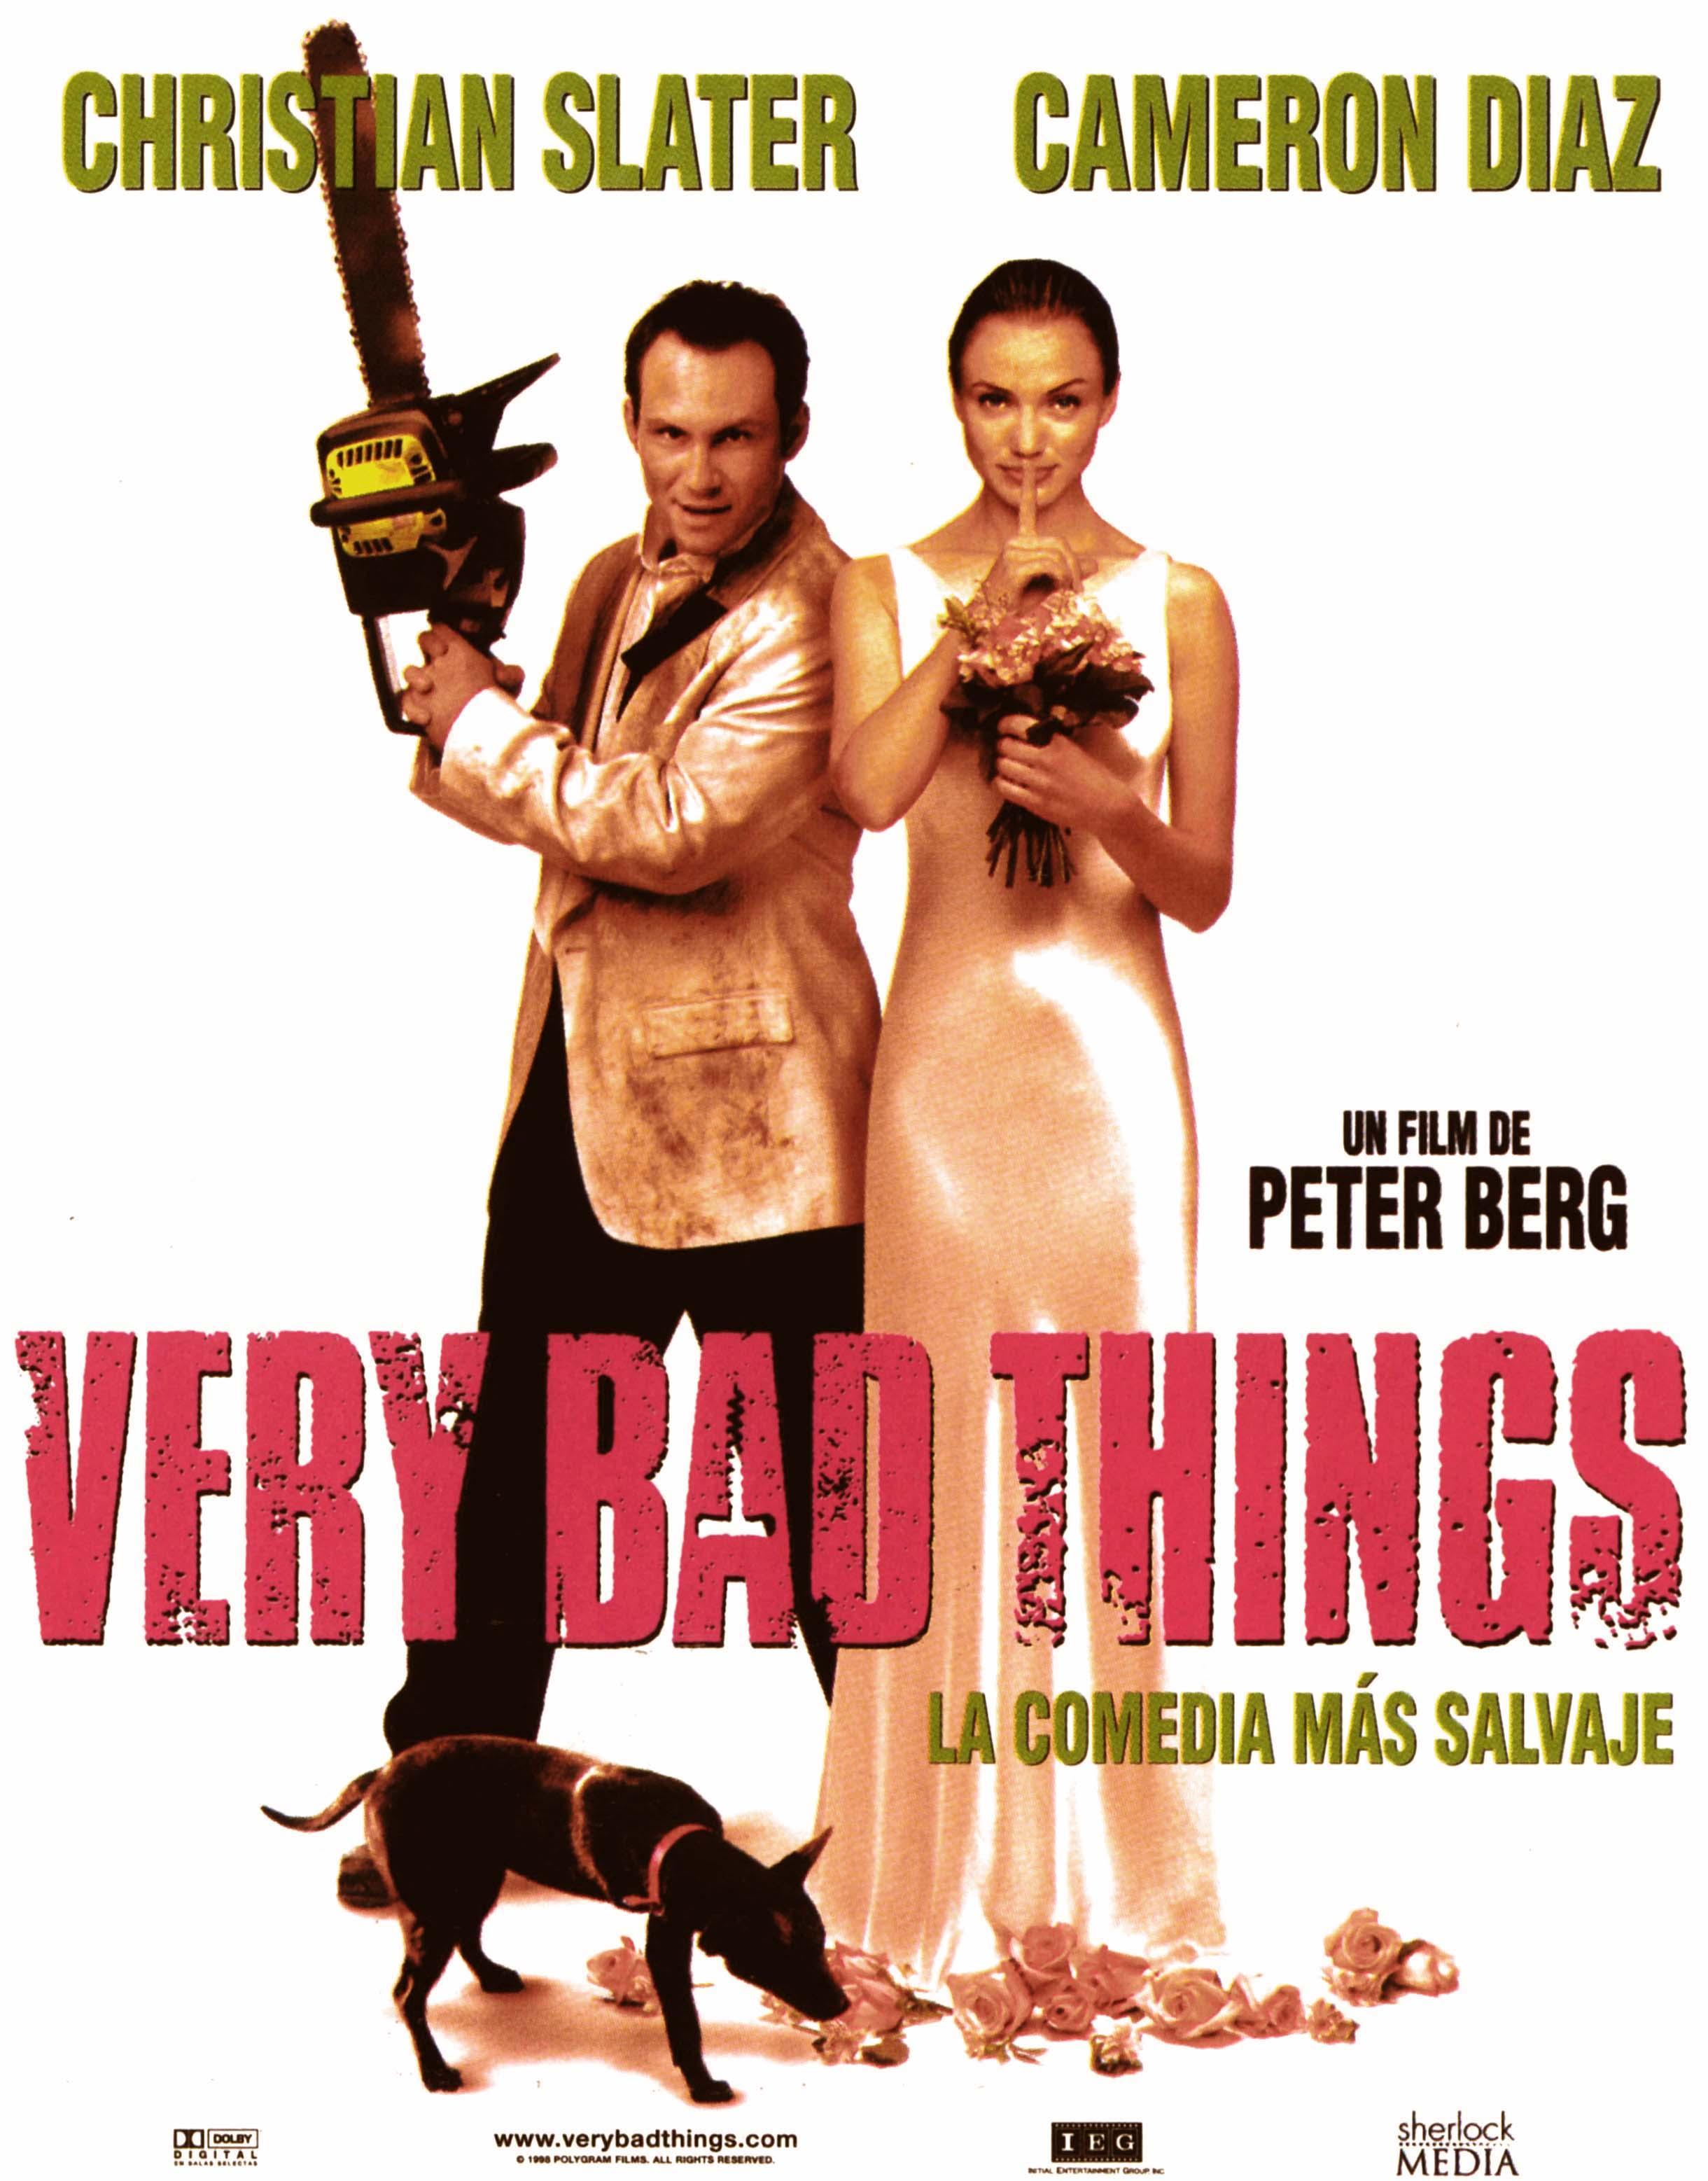 Очень дикие штучки. Very Bad things 1998 Кэмерон Диас. Очень Дикие штучки (1998) Постер к фильму.